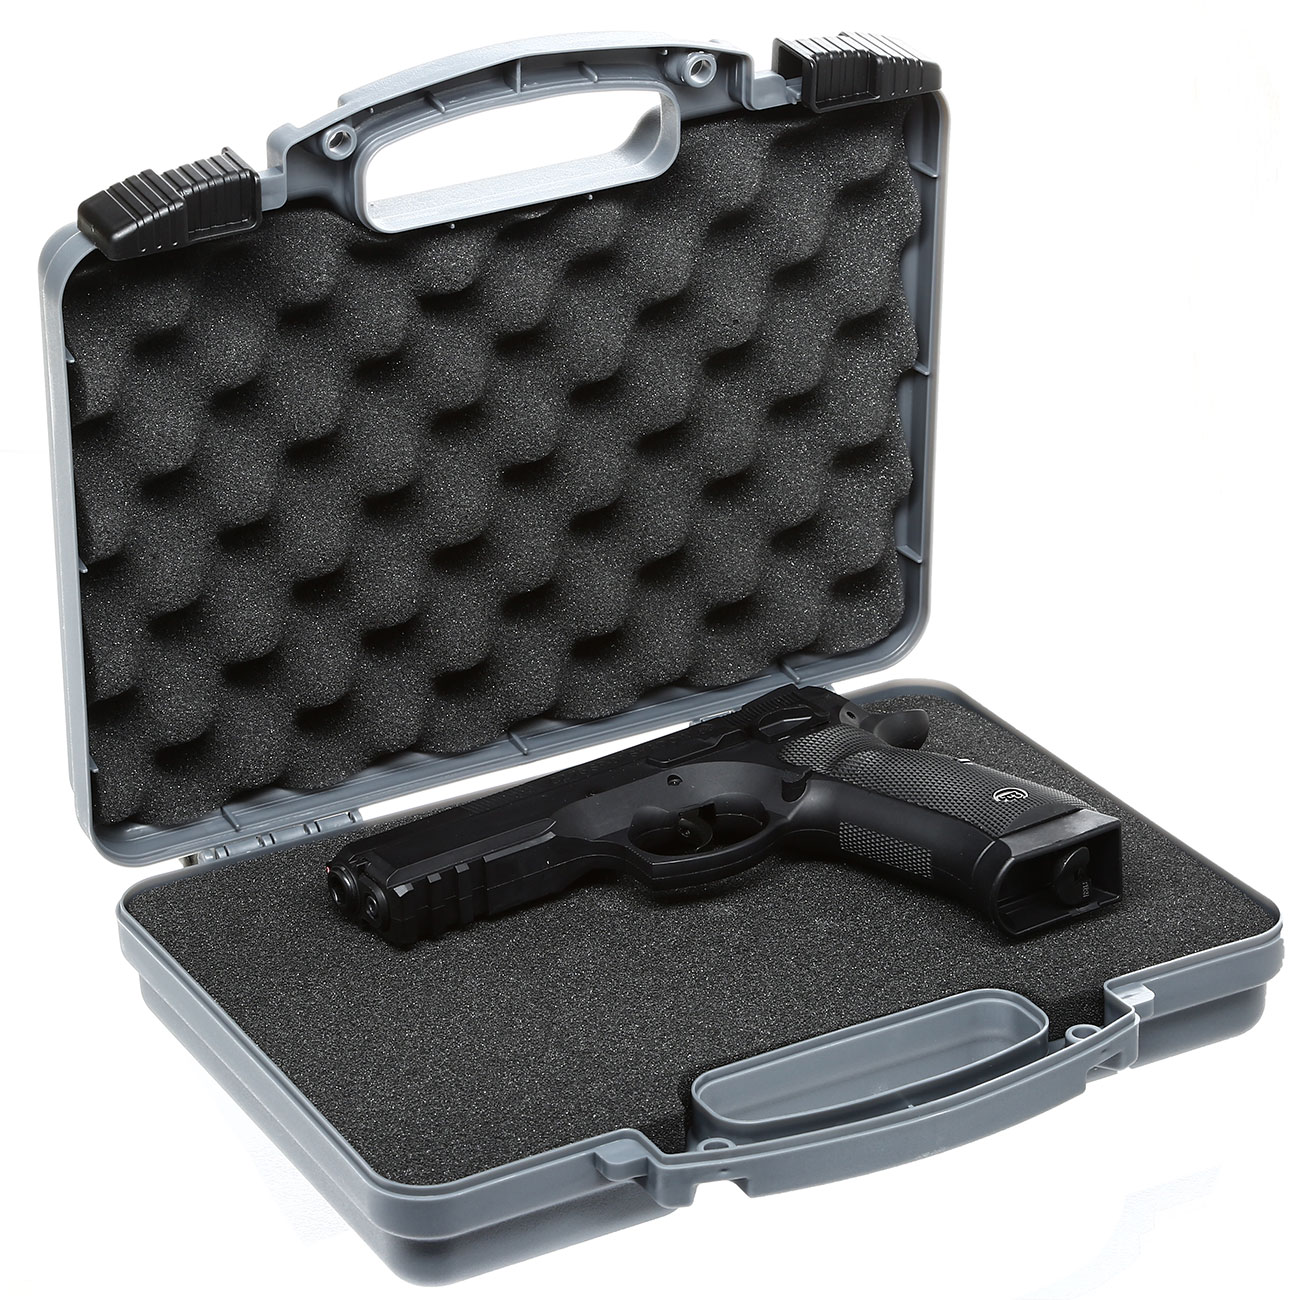 Nomis Leichter Pistolenkoffer Waffenkoffer Gun Case 31 x 25 x 8cm